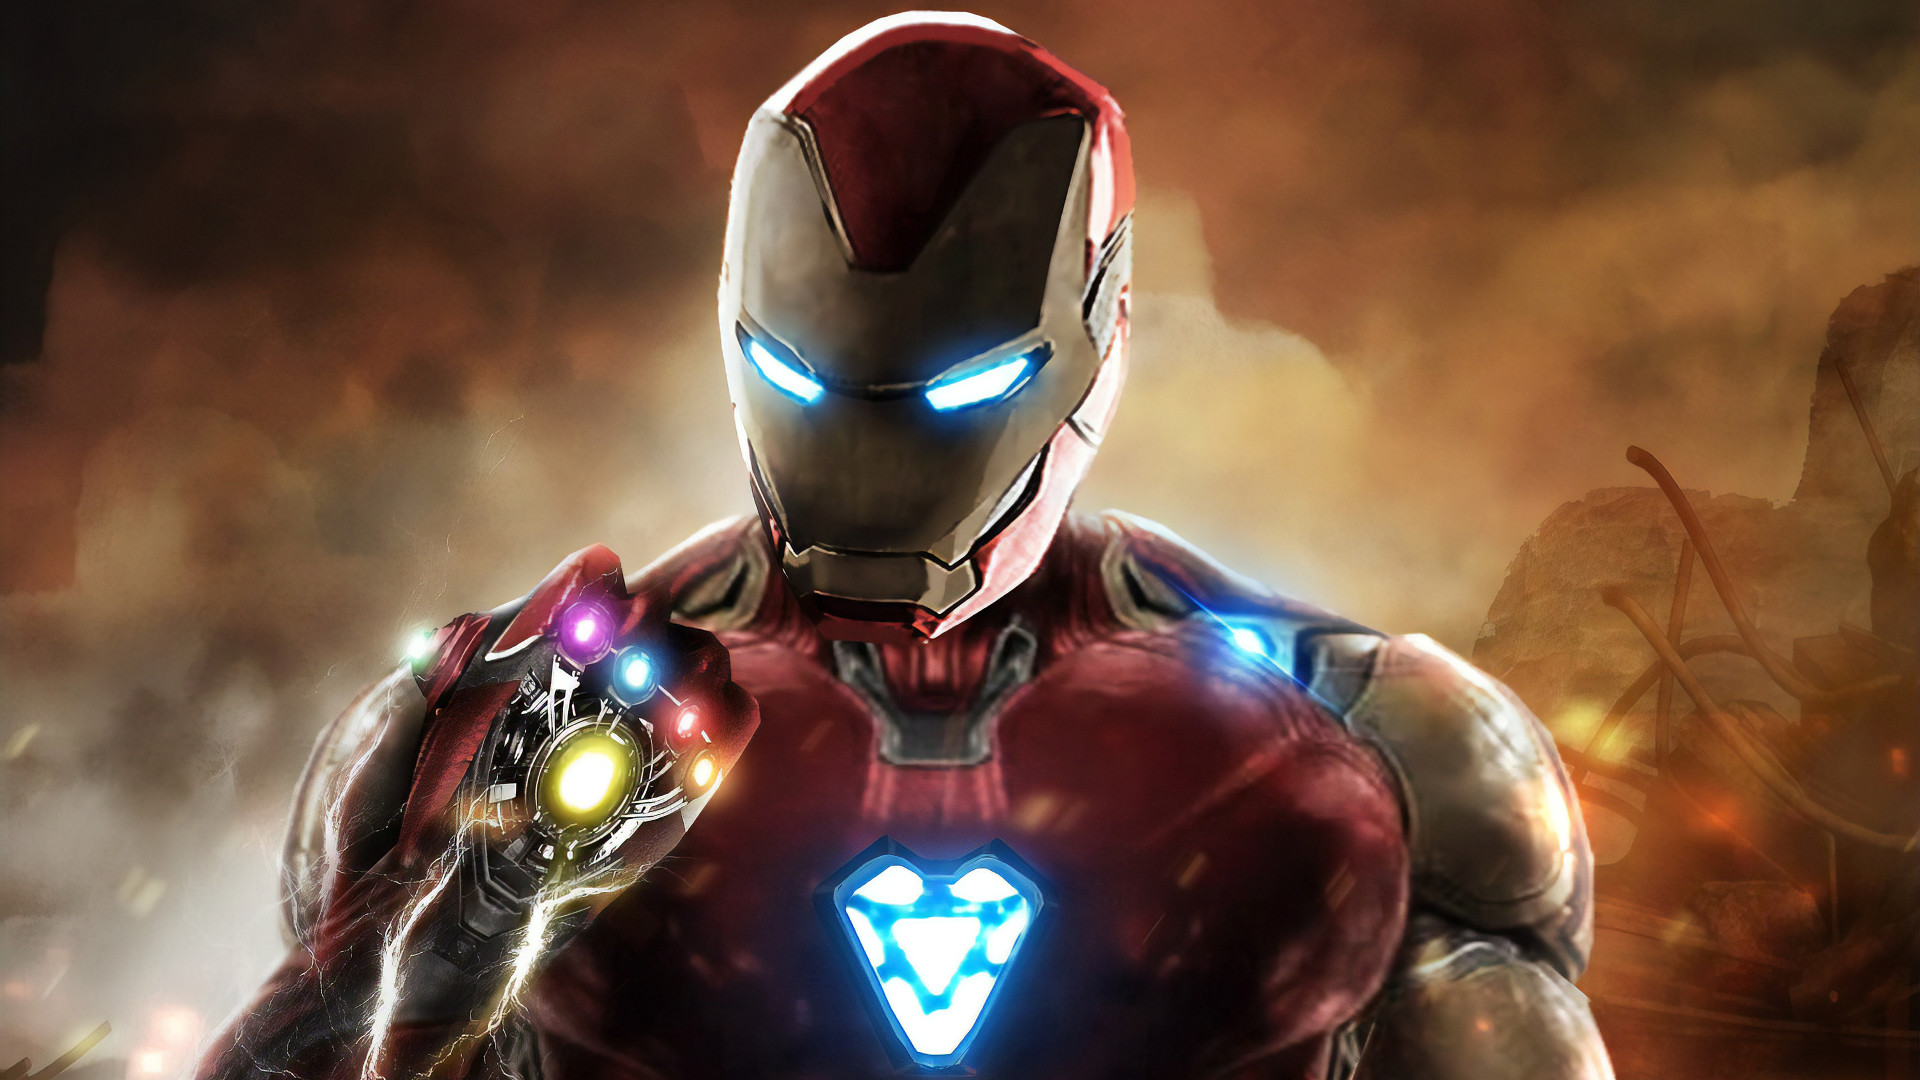 アイアンマン壁紙hd 1080p,スーパーヒーロー,架空の人物,鉄人,ヒーロー,cgアートワーク